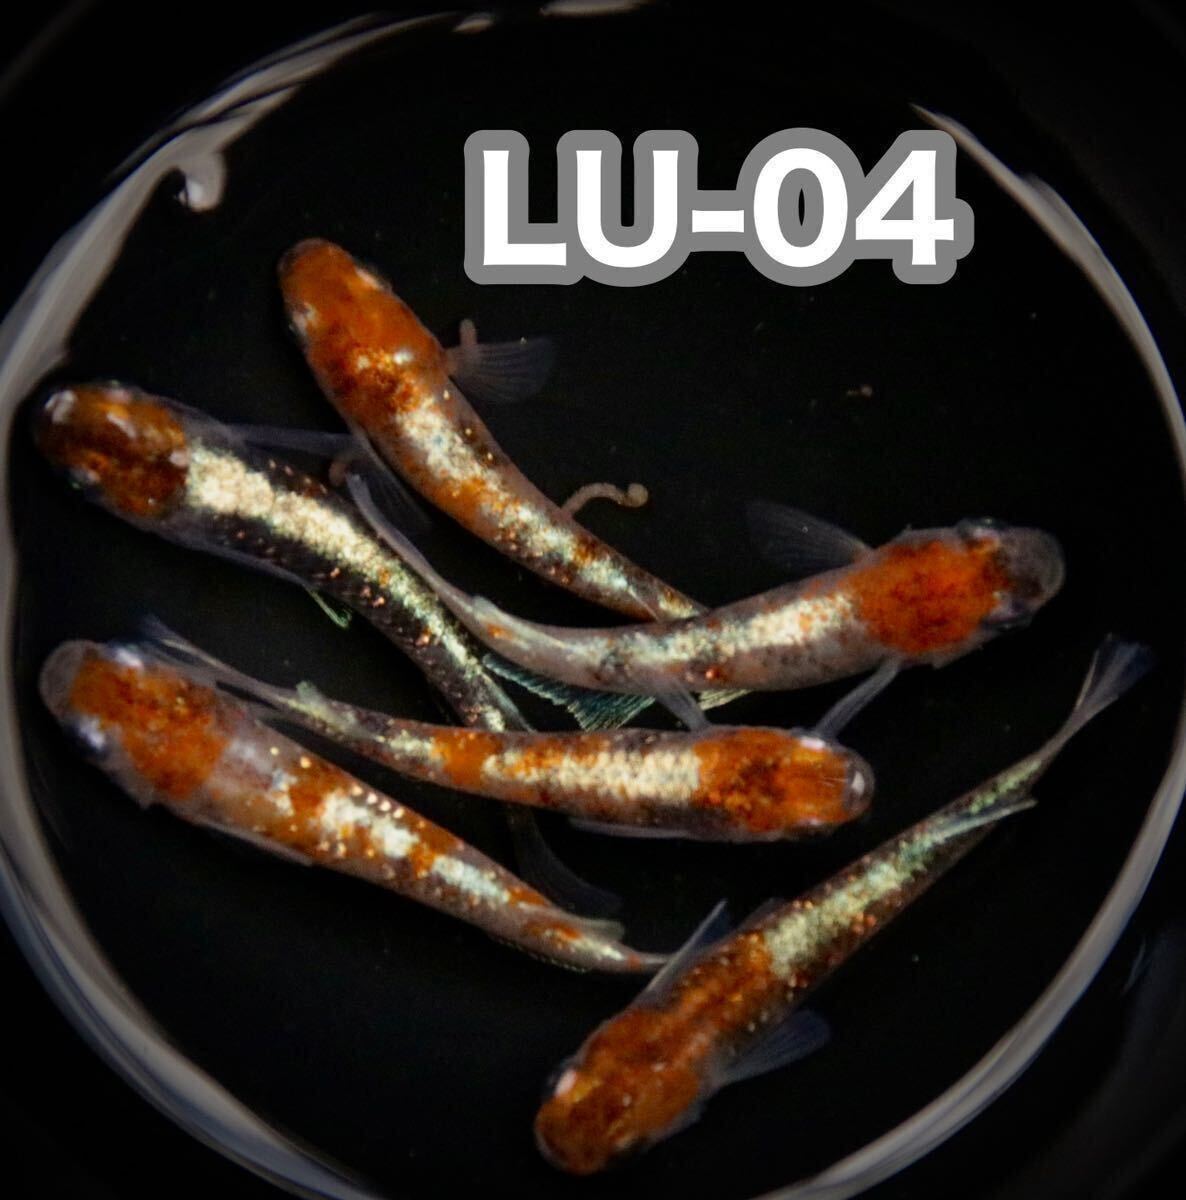 LU-04めだかの有精卵15個+@(三色体外光、三色ラメ、花魁、紅玉、ミッドナイトフリル好きにオススメ) の画像1